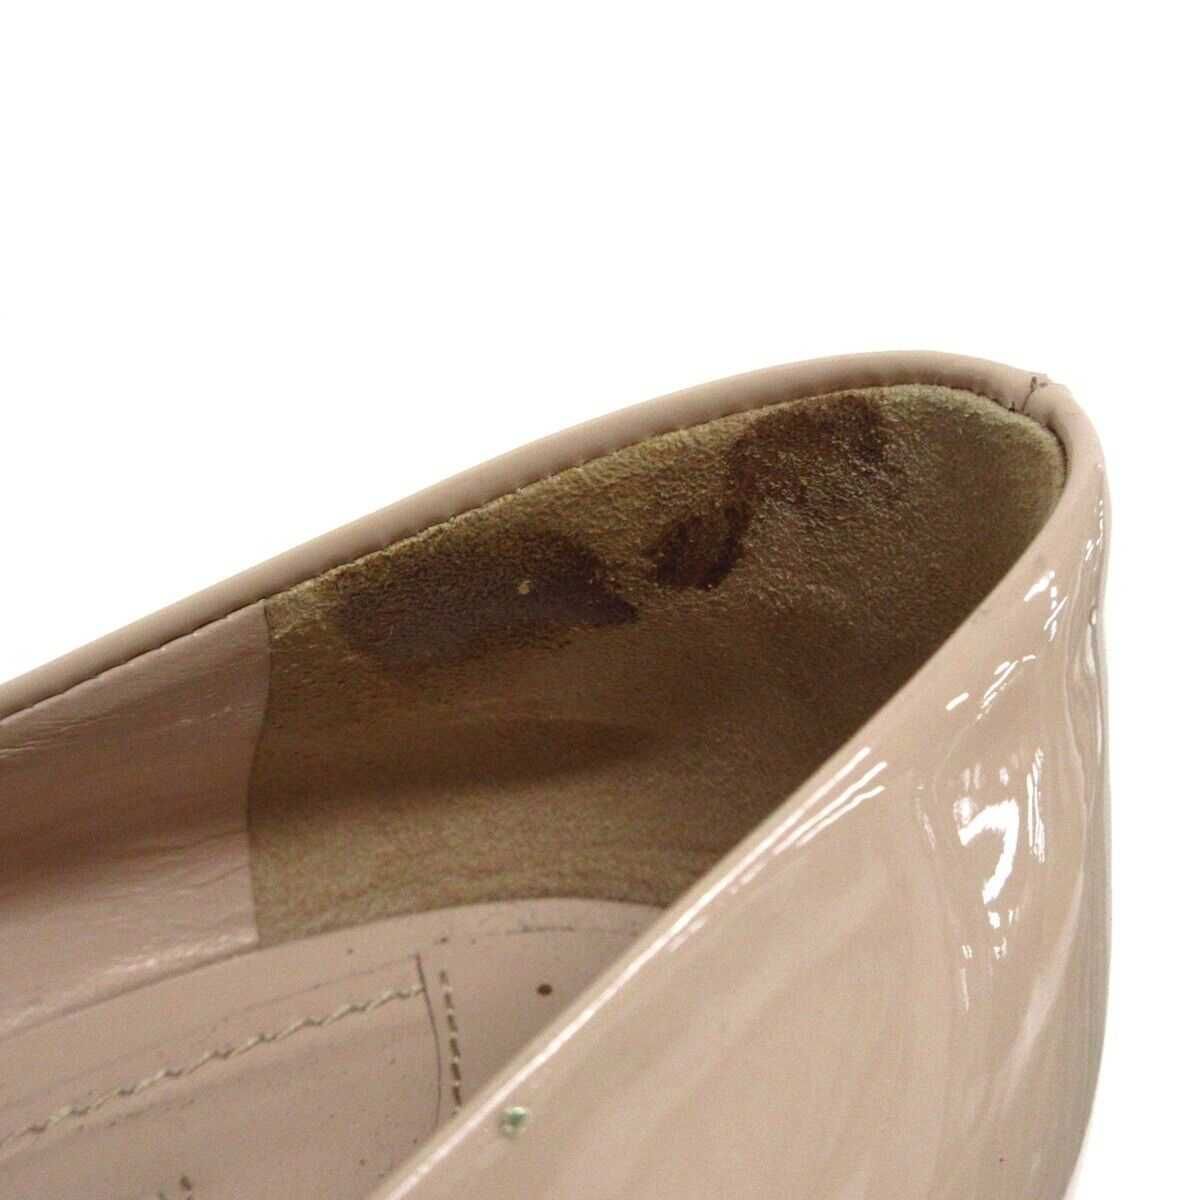 Sapatos Originais Miu Miu, tamanho 38,5